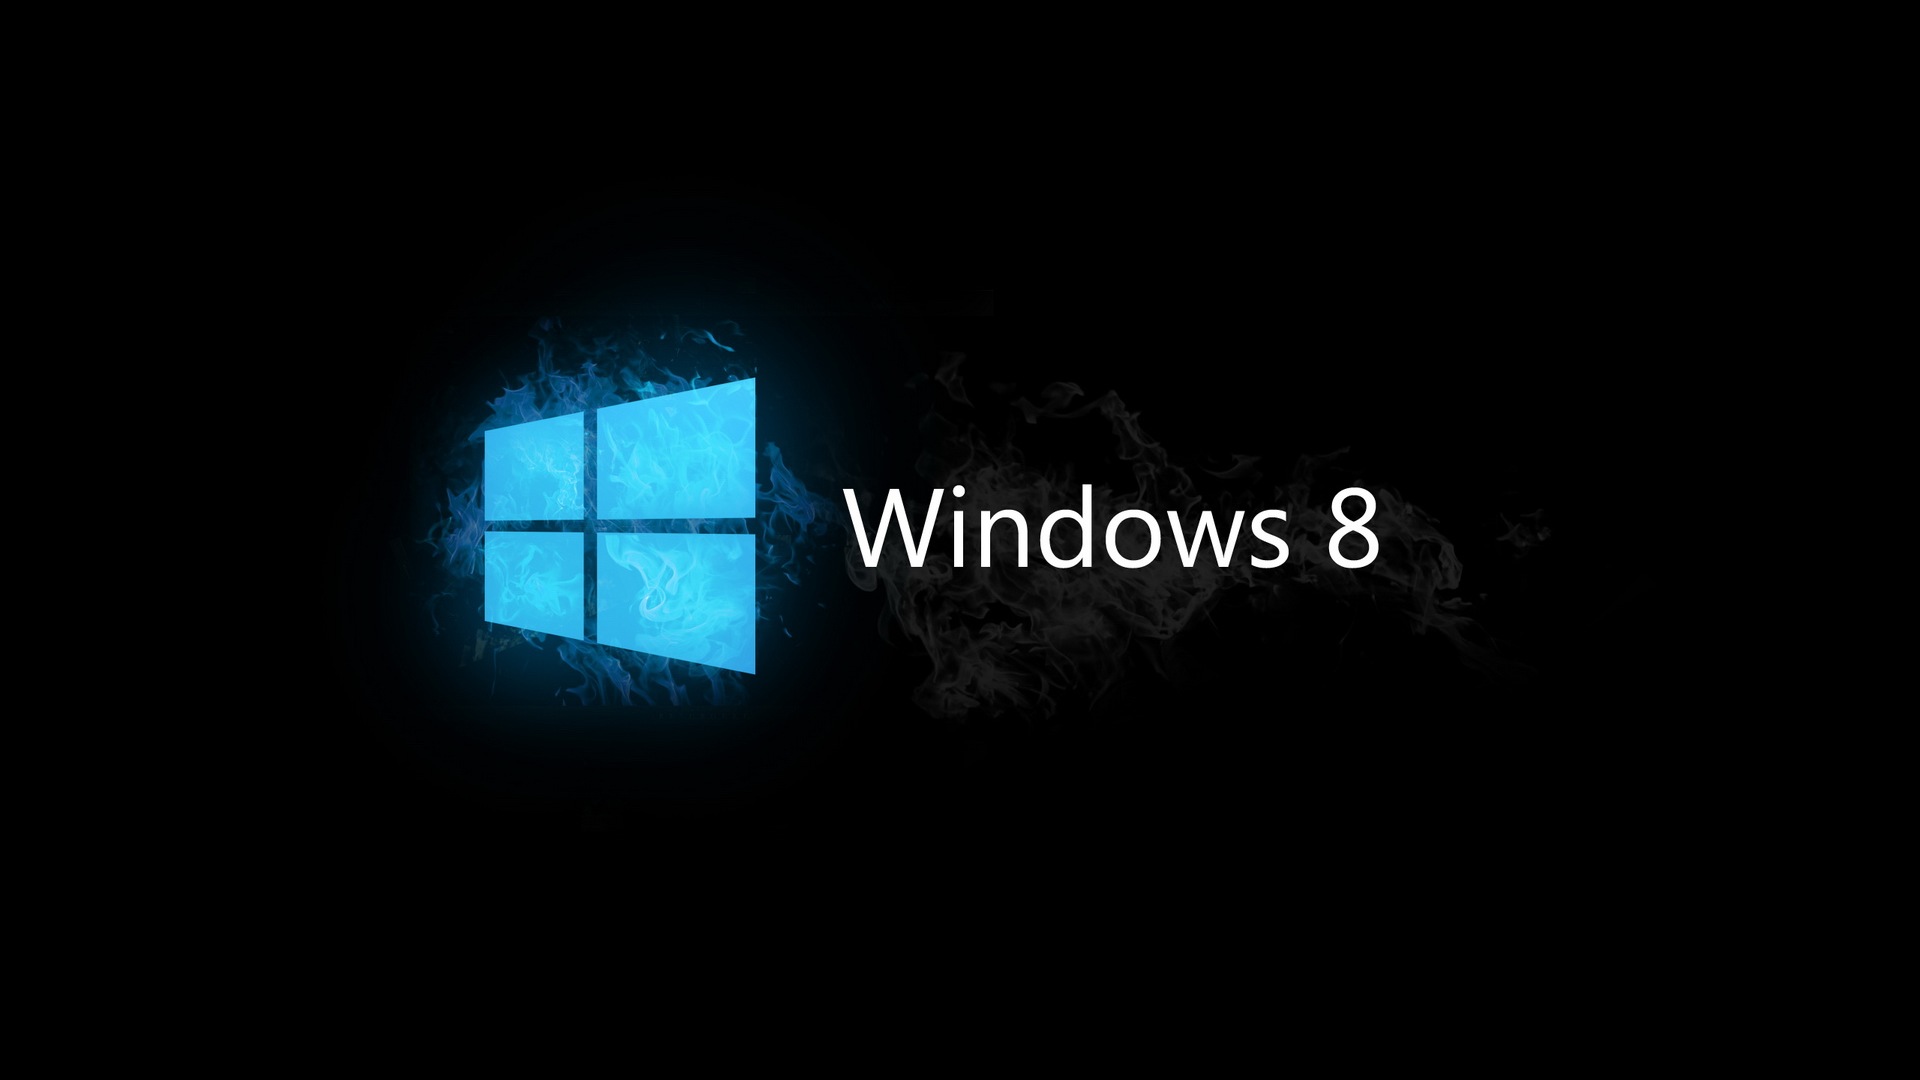 windows 8.1 fondo de pantalla hd,negro,oscuridad,azul,blanco,texto